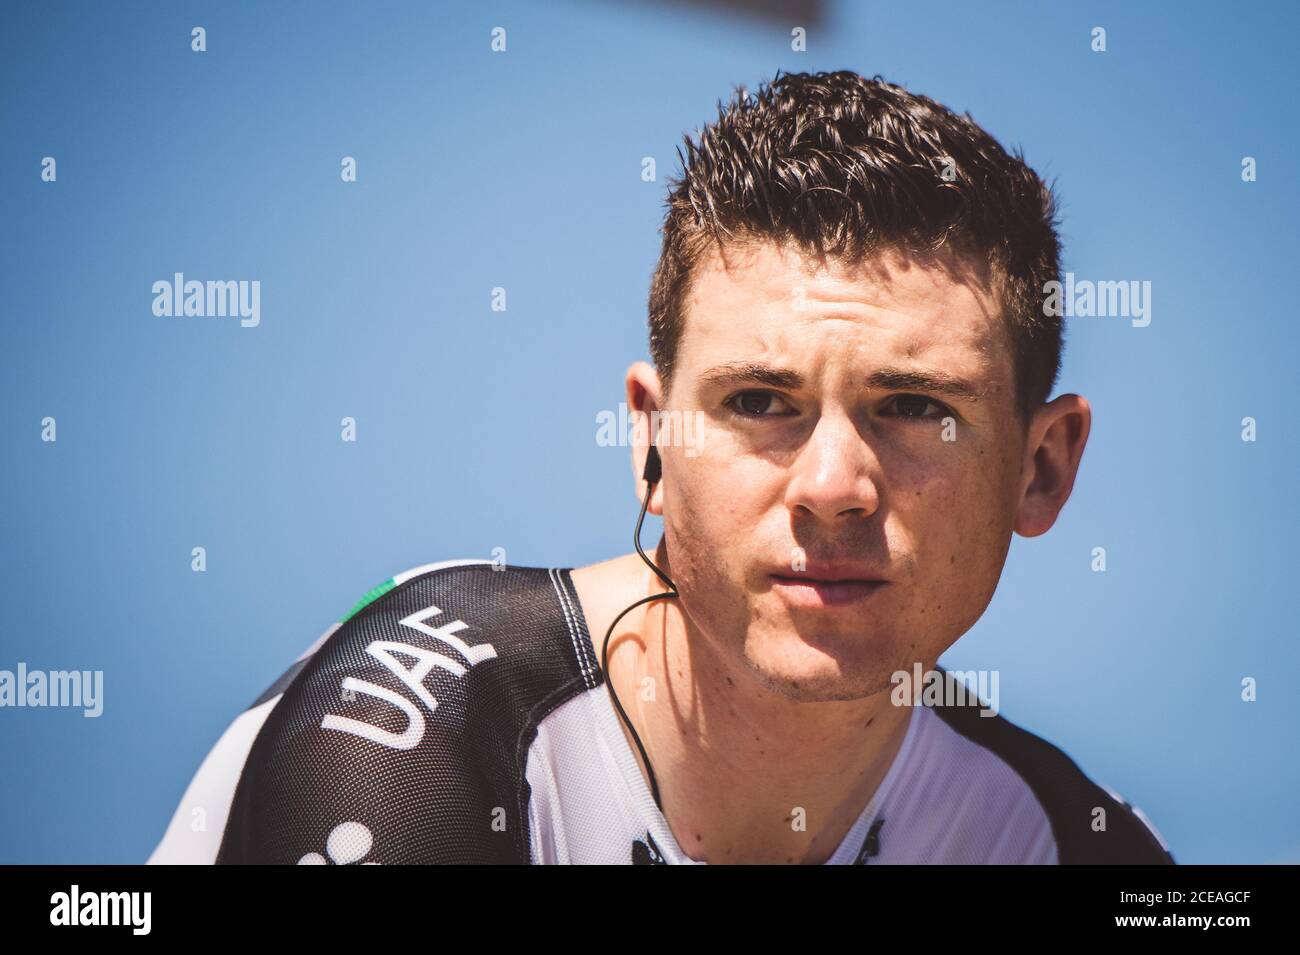 6 luglio 2017, Francia; Ciclismo, Tour de France 6° tappa: Ben Swift al via della tappa. Foto Stock